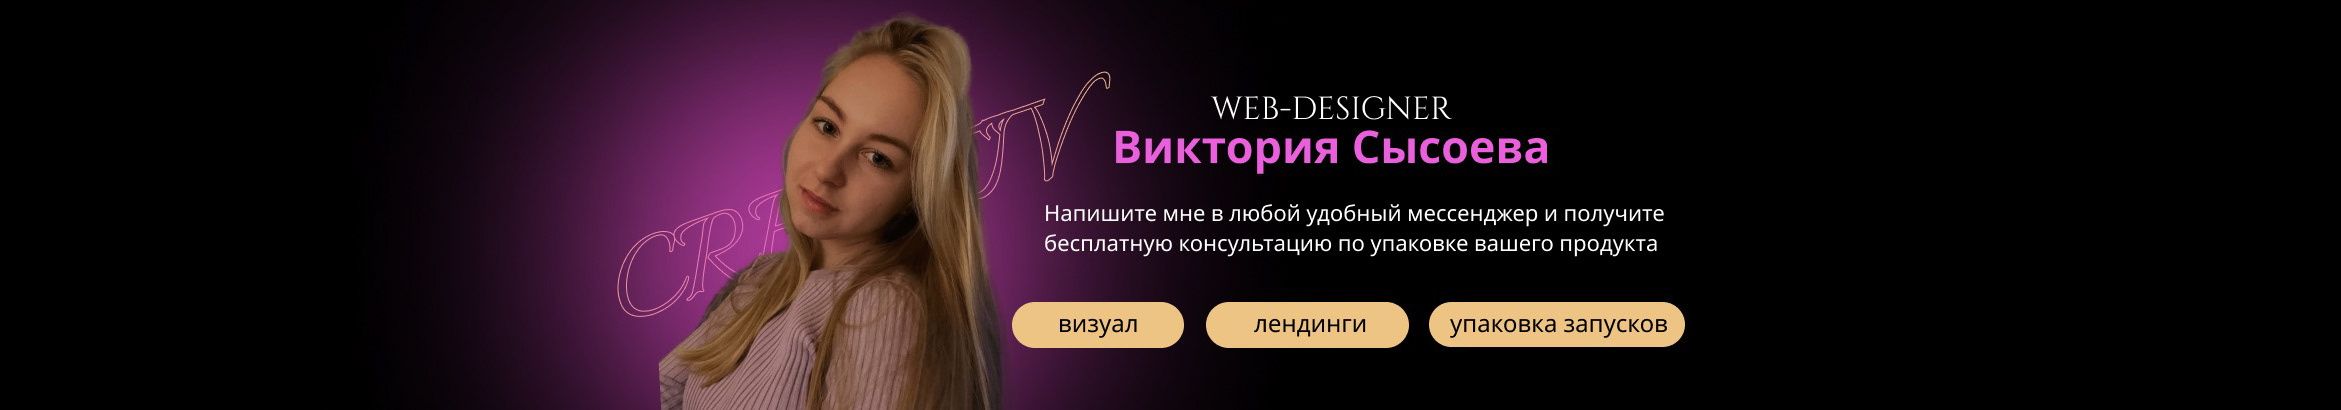 Banner del profilo di Viktoria Sysoeva